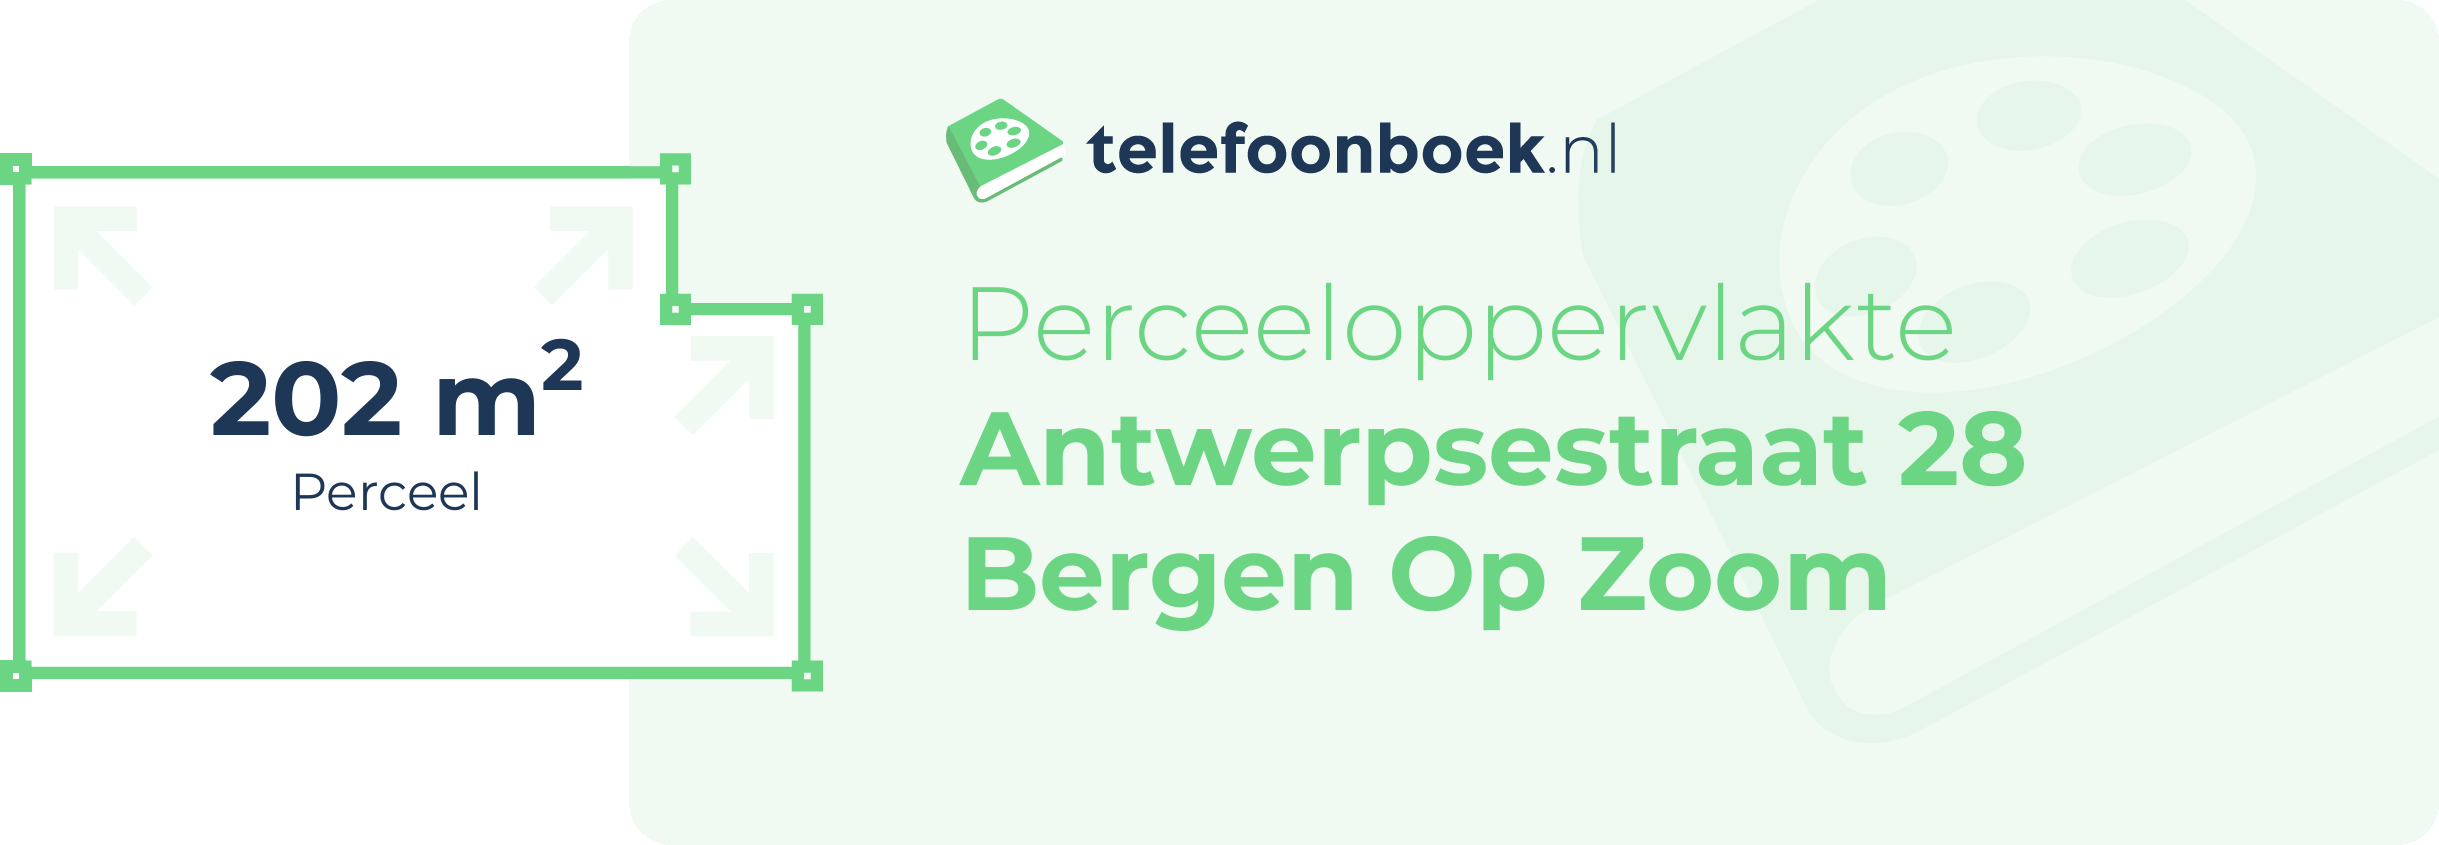 Perceeloppervlakte Antwerpsestraat 28 Bergen Op Zoom